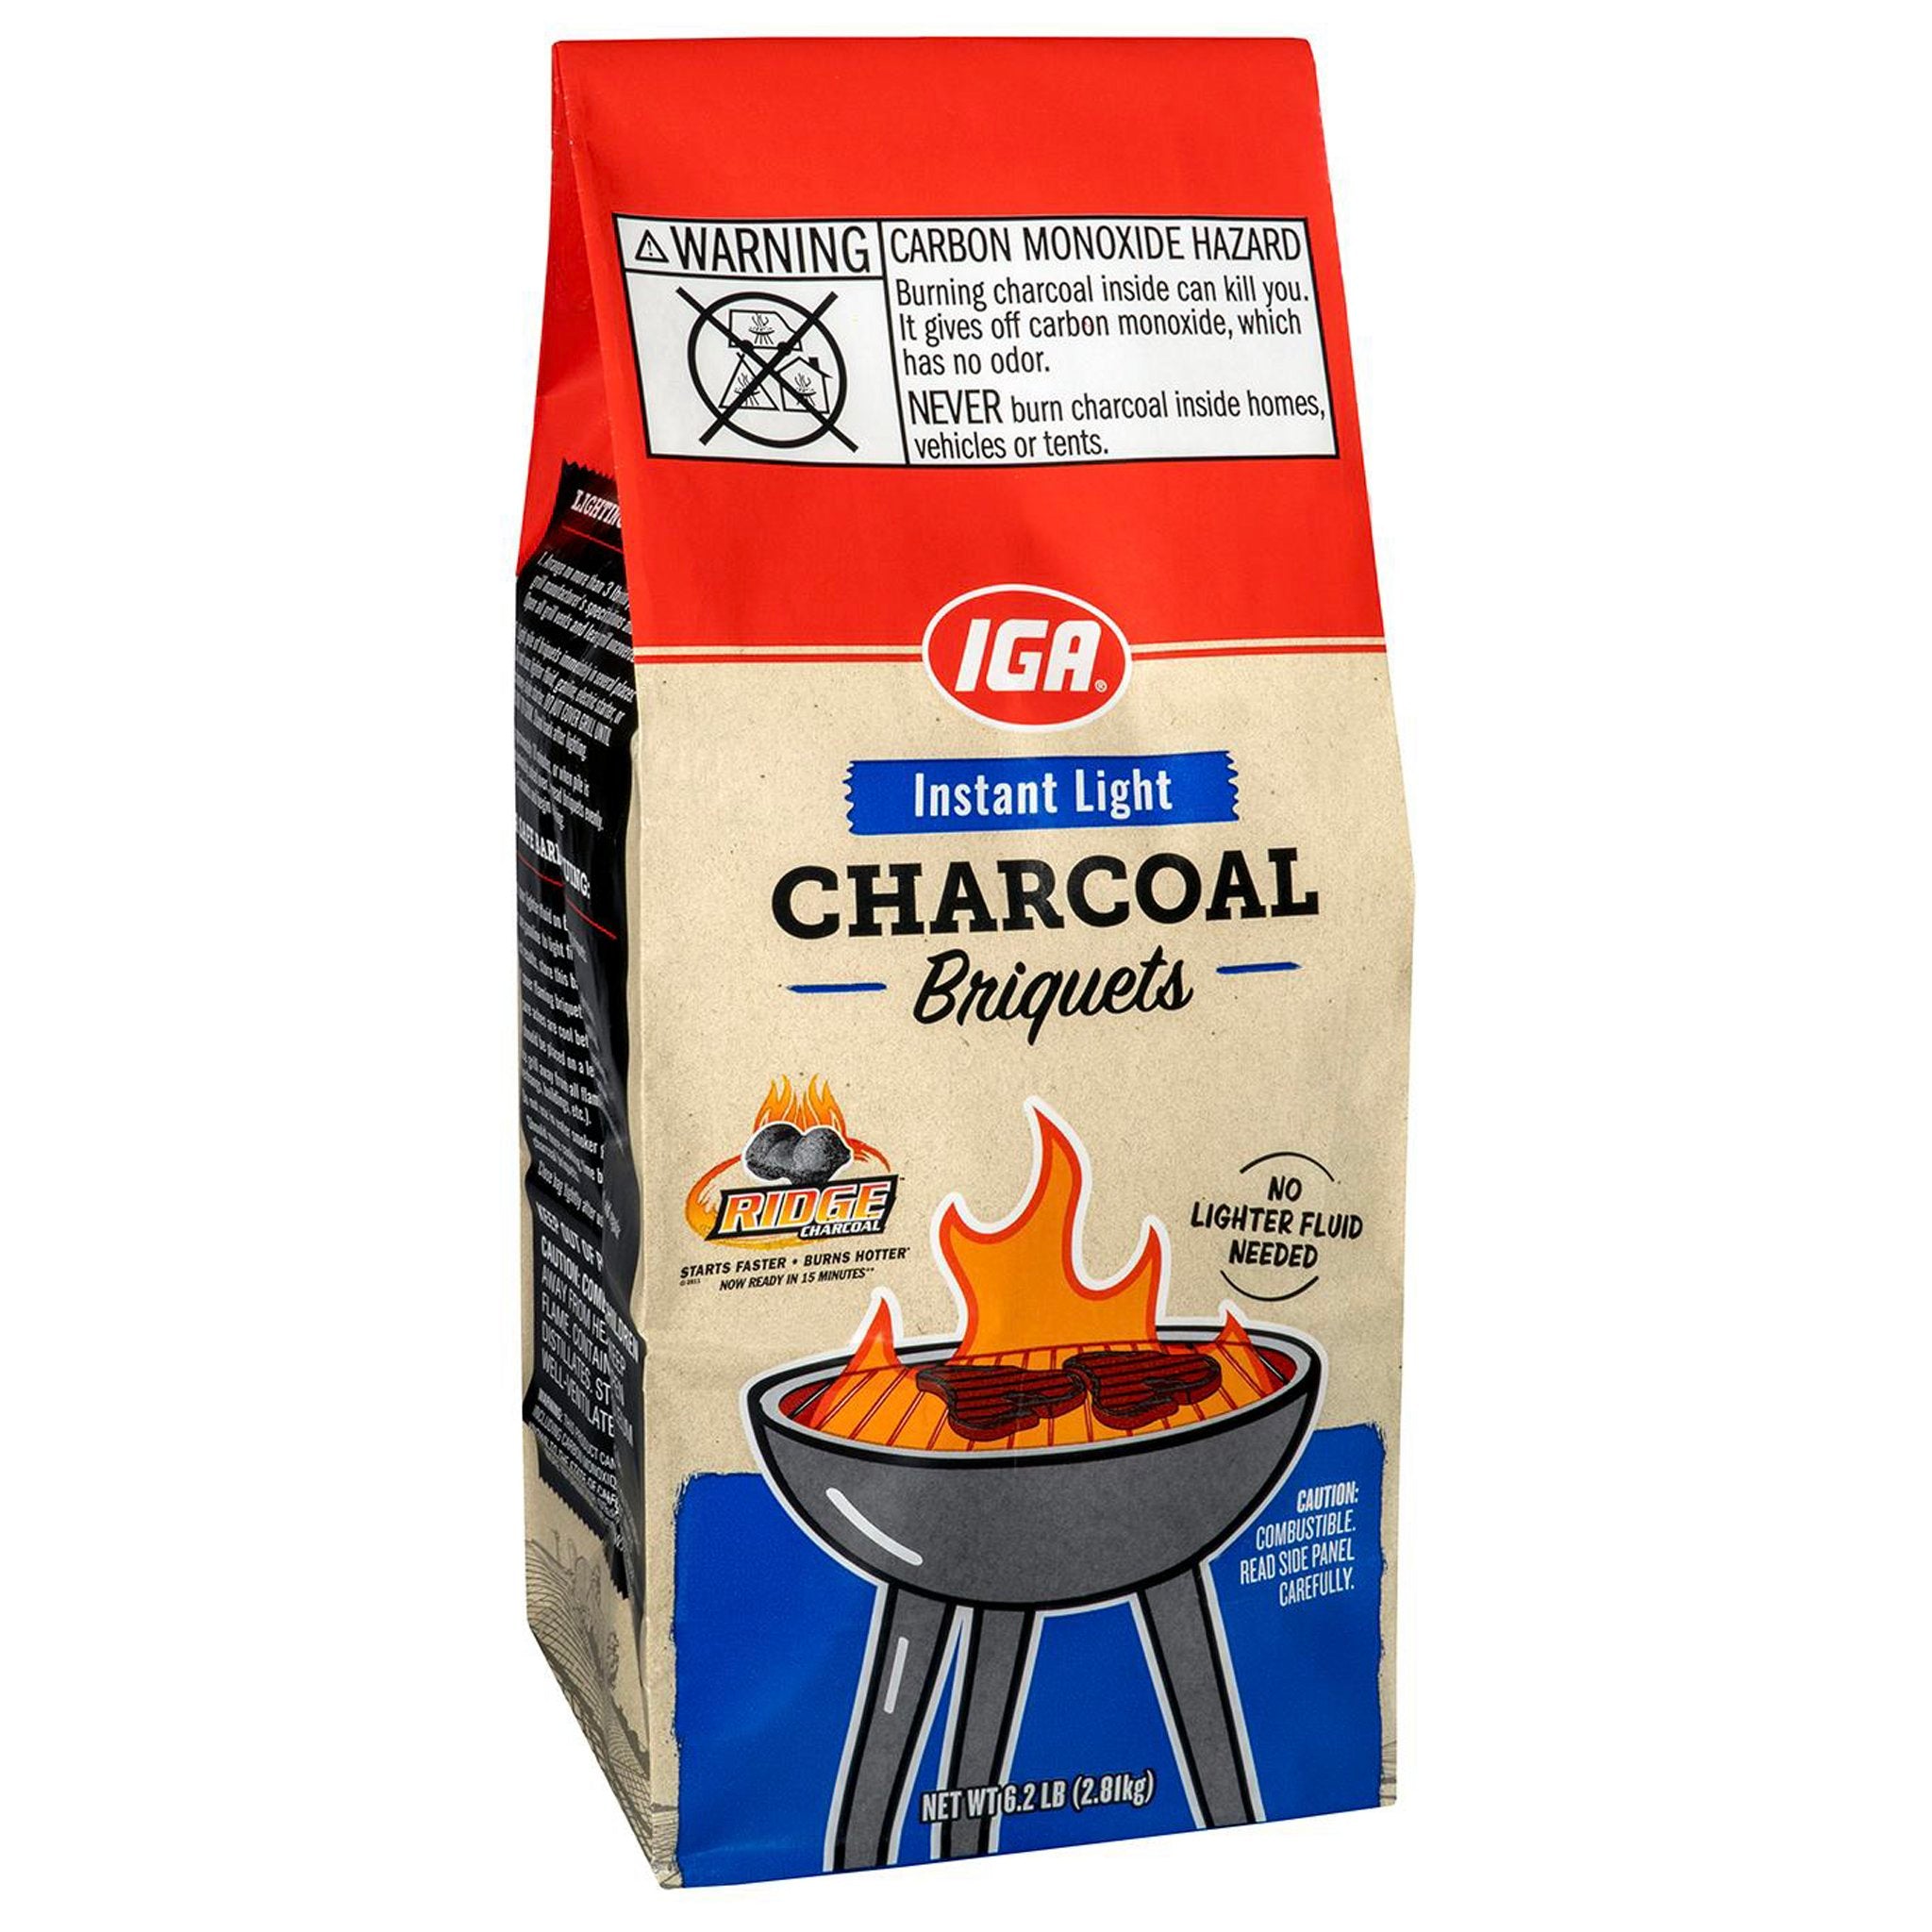 Charcoal Briquets 7.7LB - Best Yet Brand